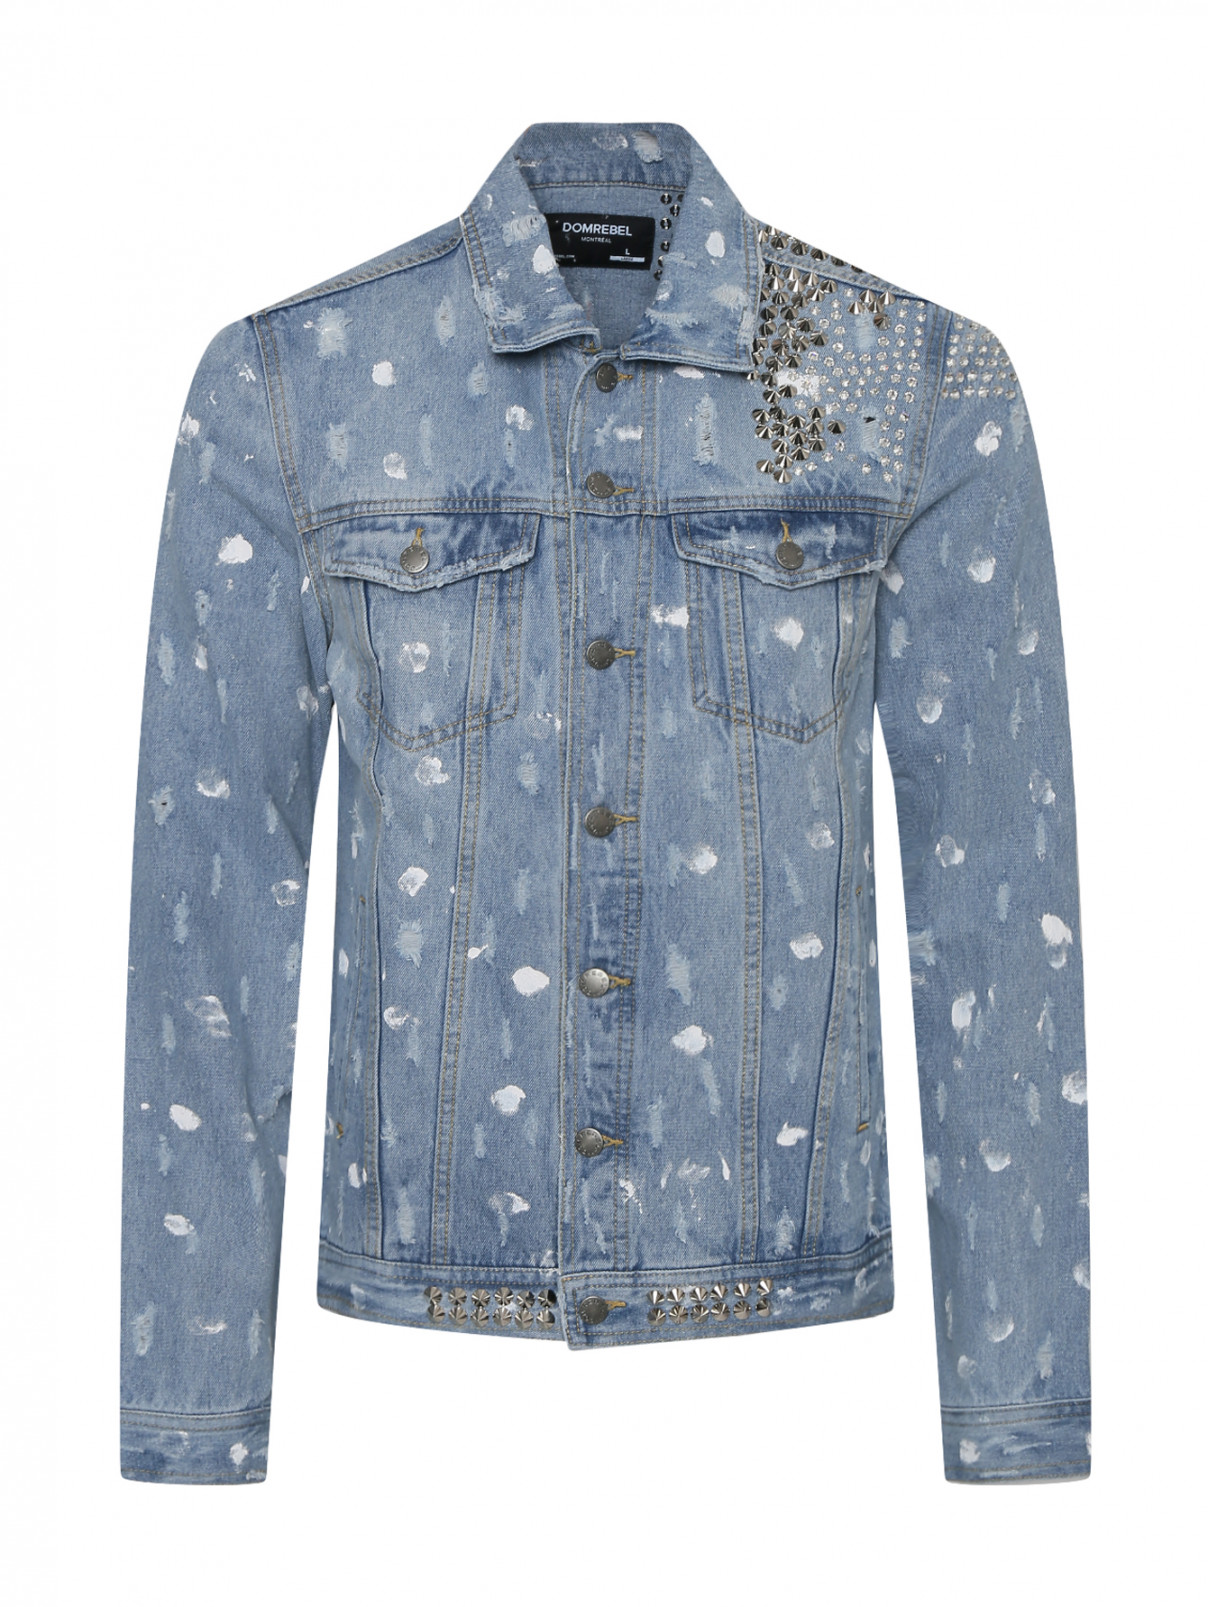 Джинсовая куртка из хлопка с металлическими аппликациями Domrebel  –  Общий вид  – Цвет:  Синий